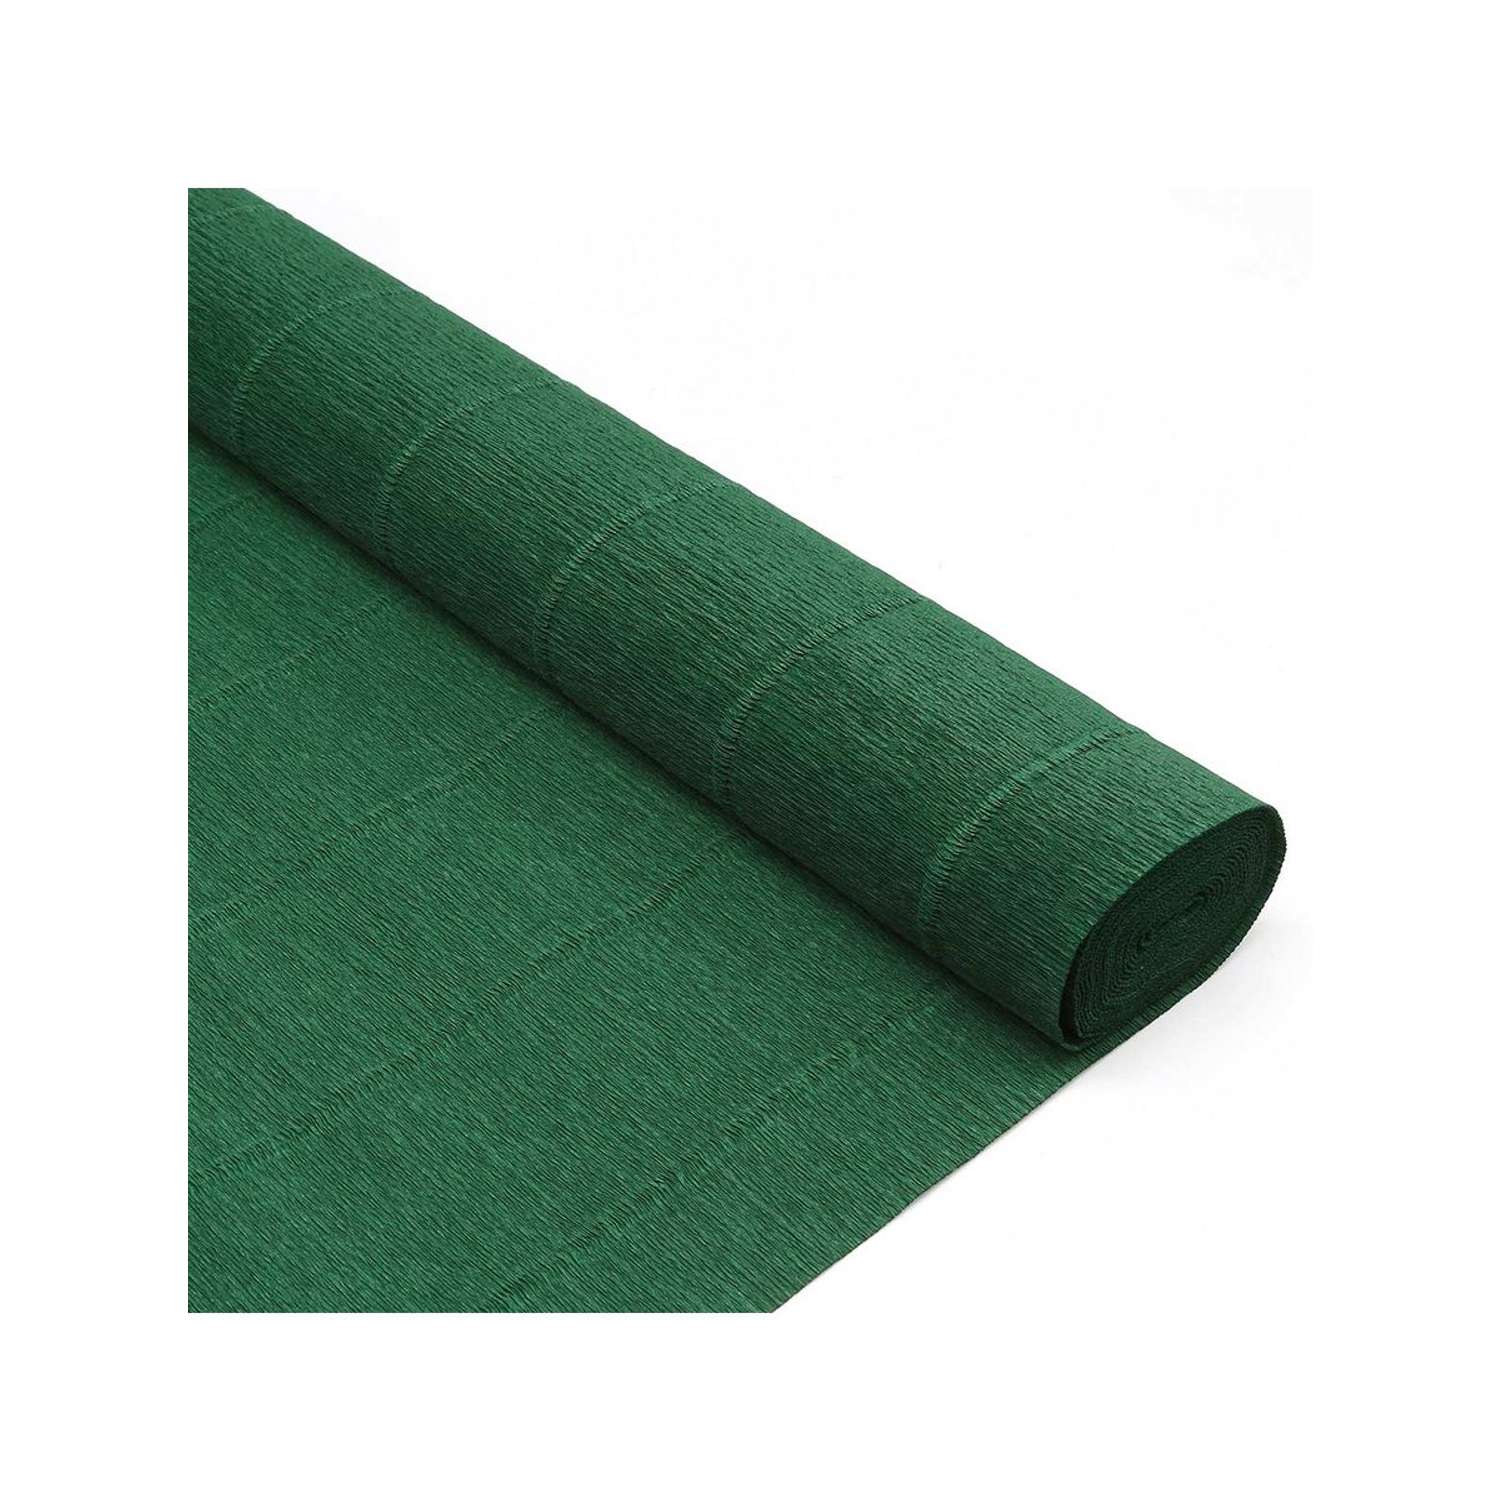 Бумага Айрис гофрированная креповая для творчества 50 см х 2.5 м 180 гр хвойно-зеленая - фото 3